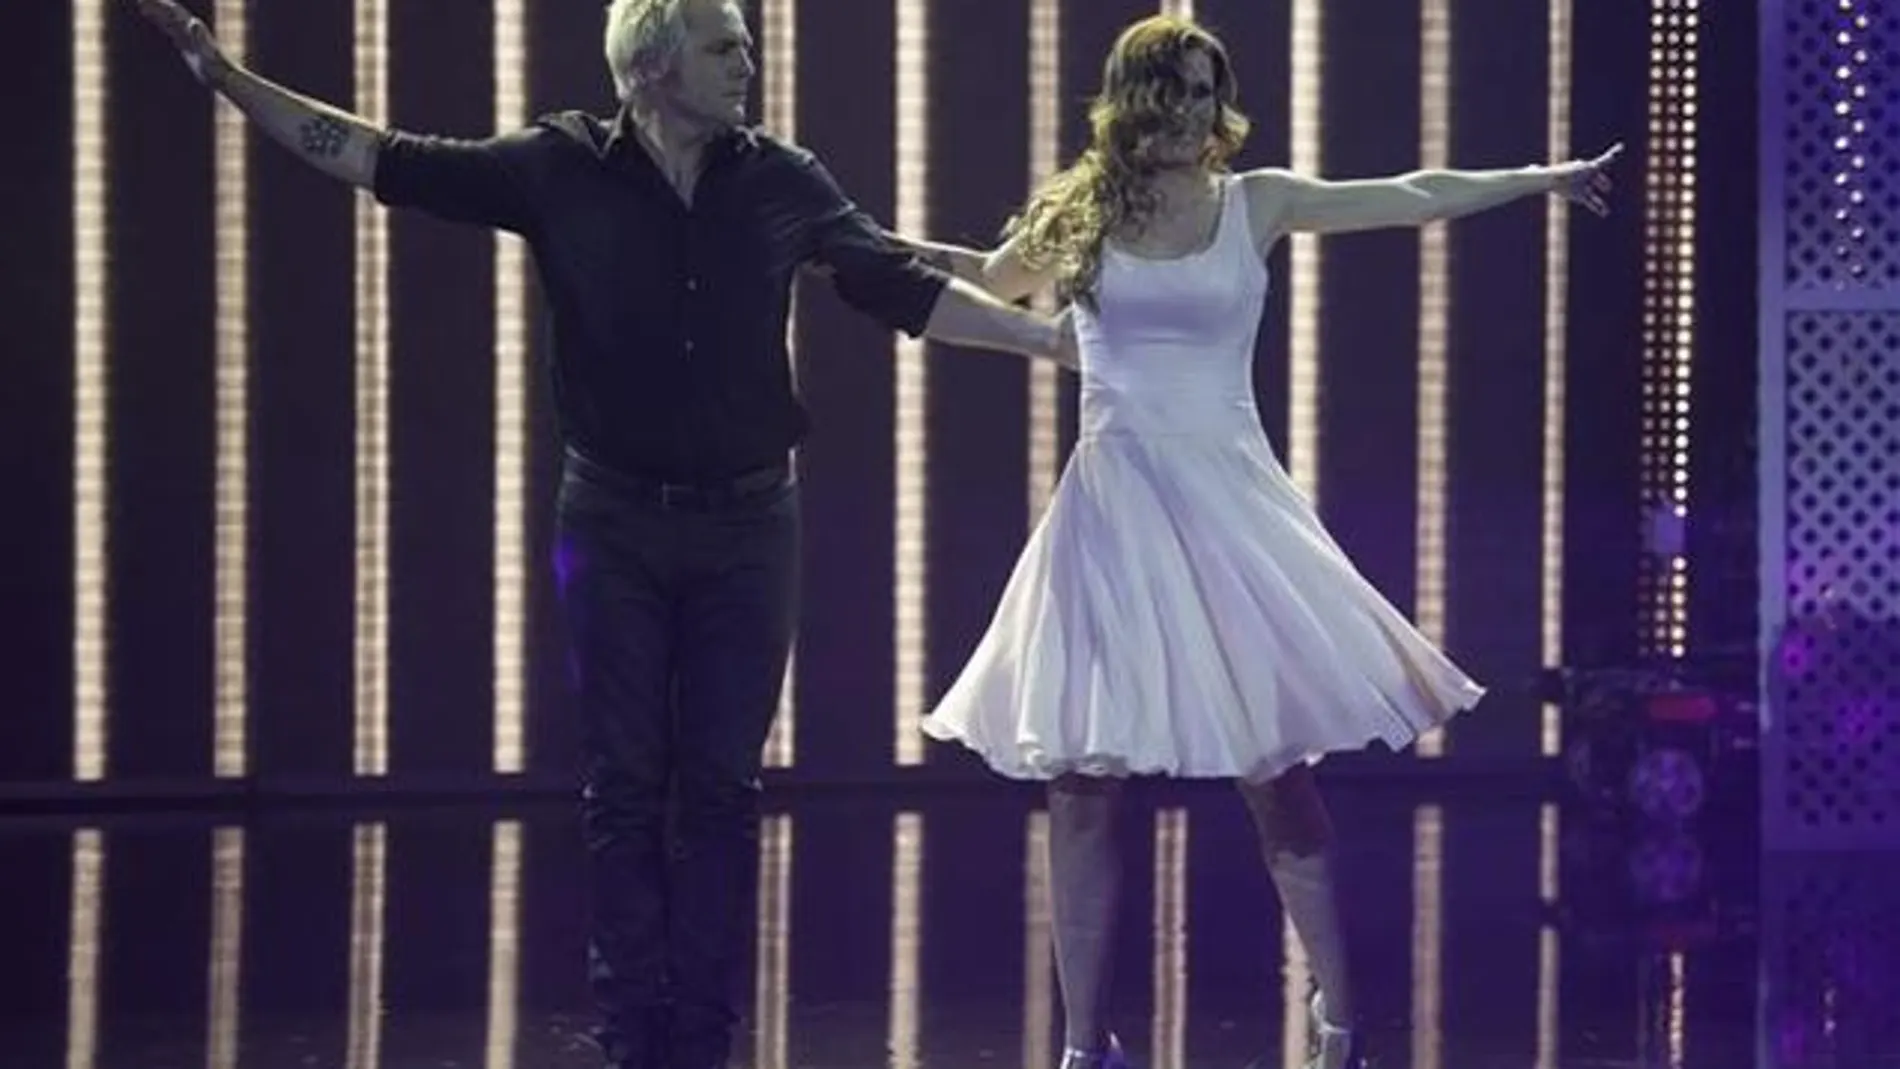 Santiago Cañizares y su mujer bailan "Dirty Dancing".